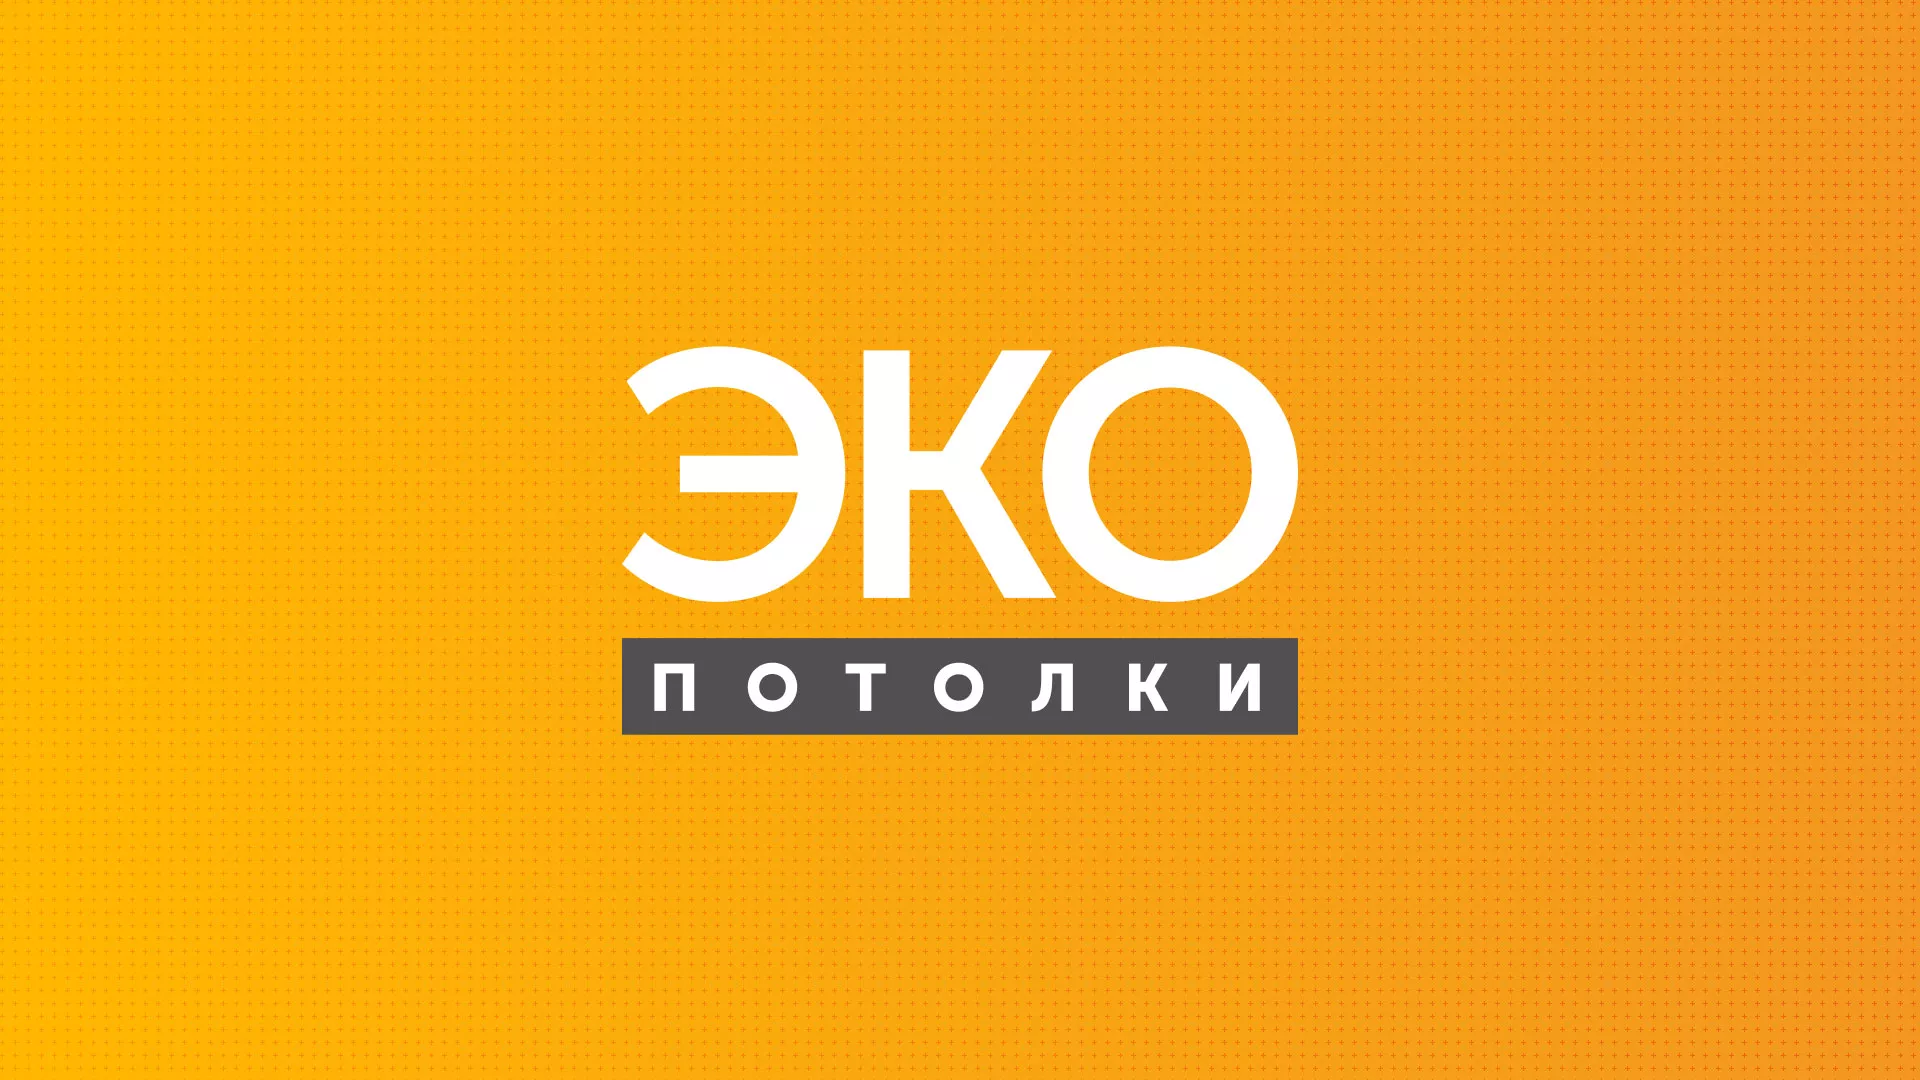 Разработка сайта по натяжным потолкам «Эко Потолки» в Щелково